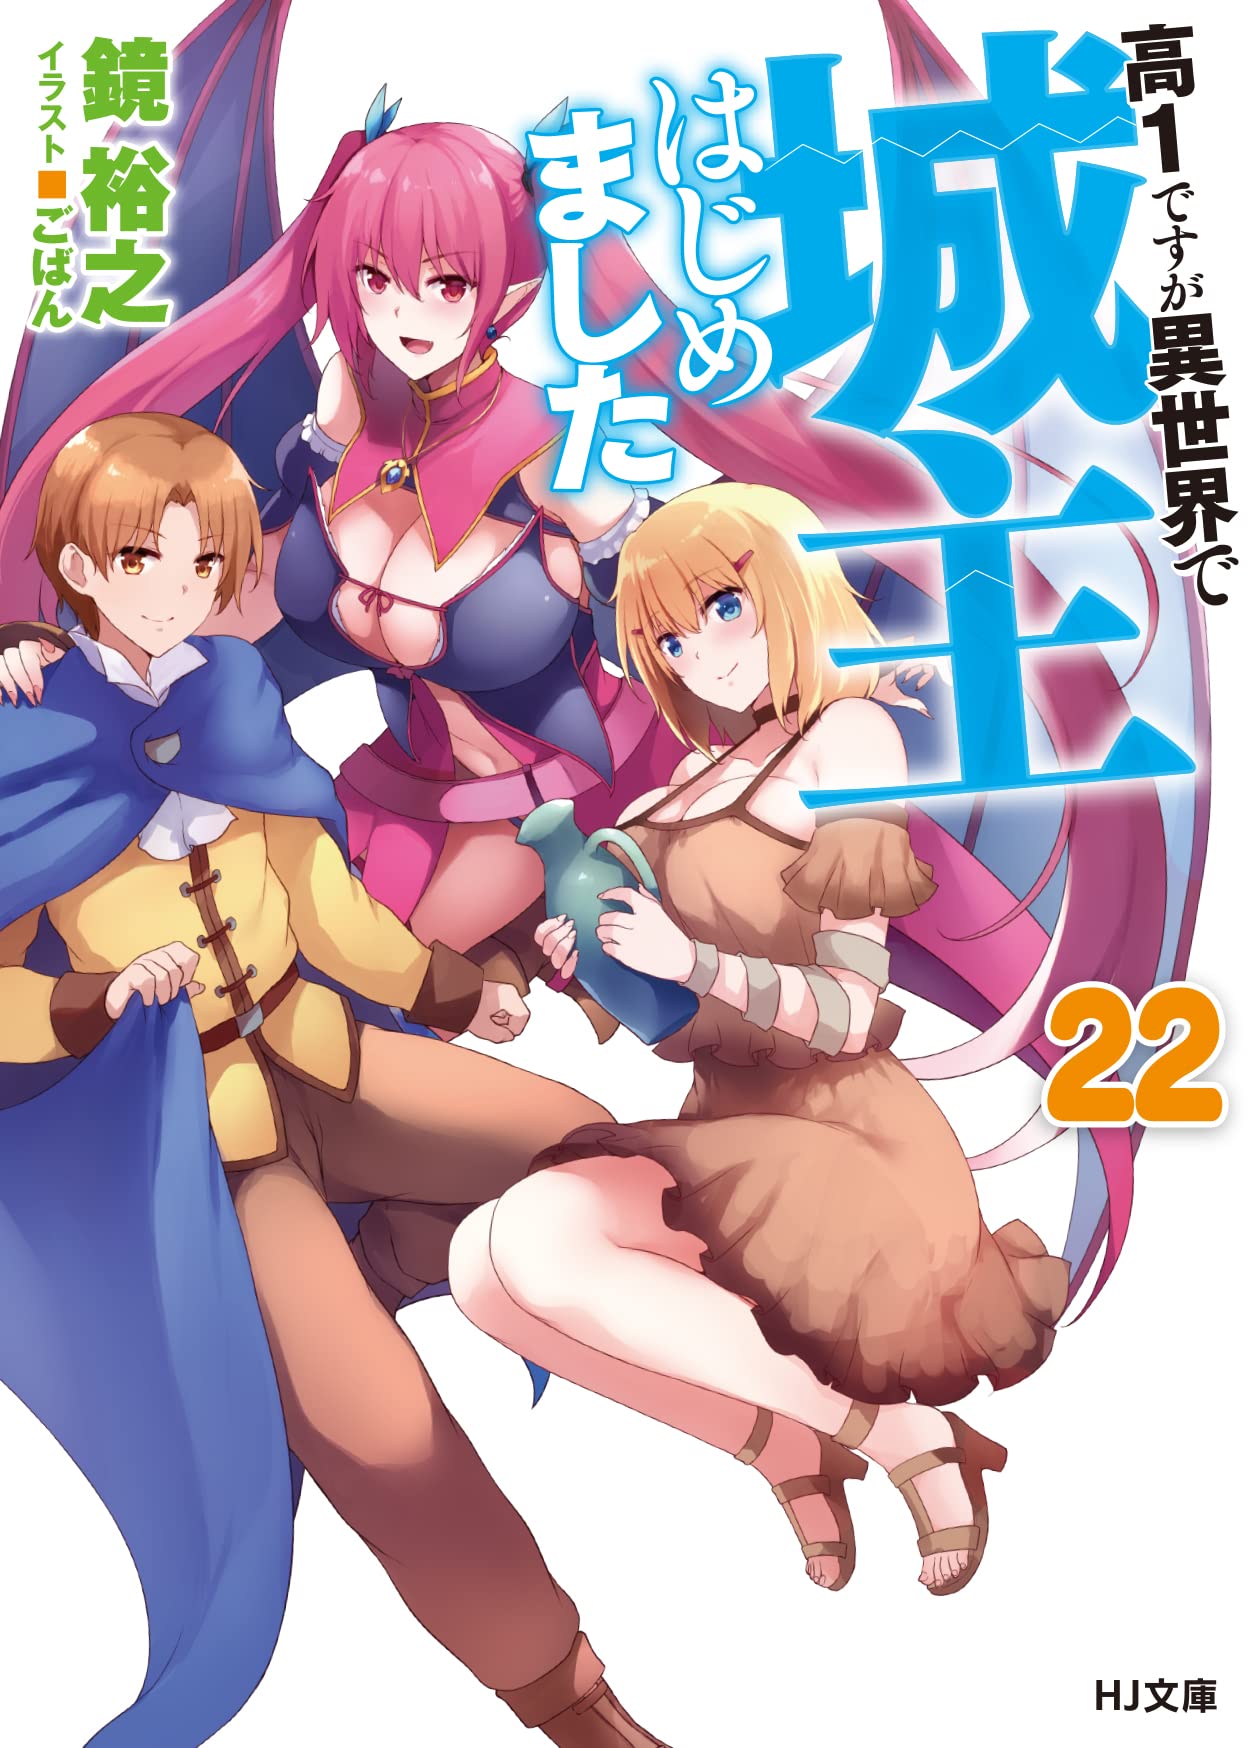 Kou 1 Desu ga Isekai de Joushu Hajimemashita (Light Novel 